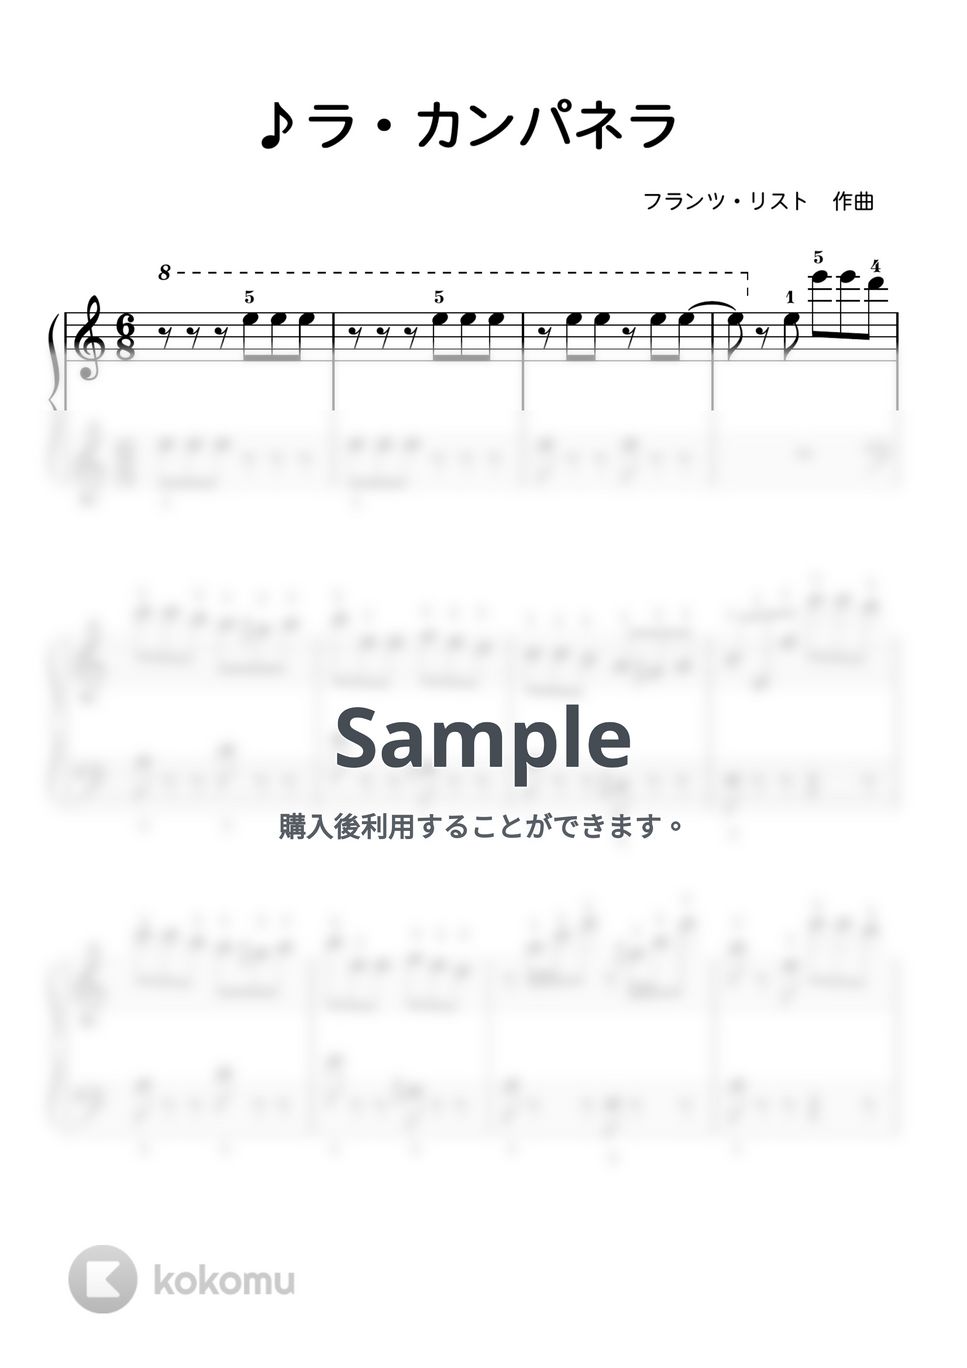 フランツ・リスト - 【初級】ラ・カンパネラ(鐘) (フランツ・リスト) by ピアノのせんせいの楽譜集